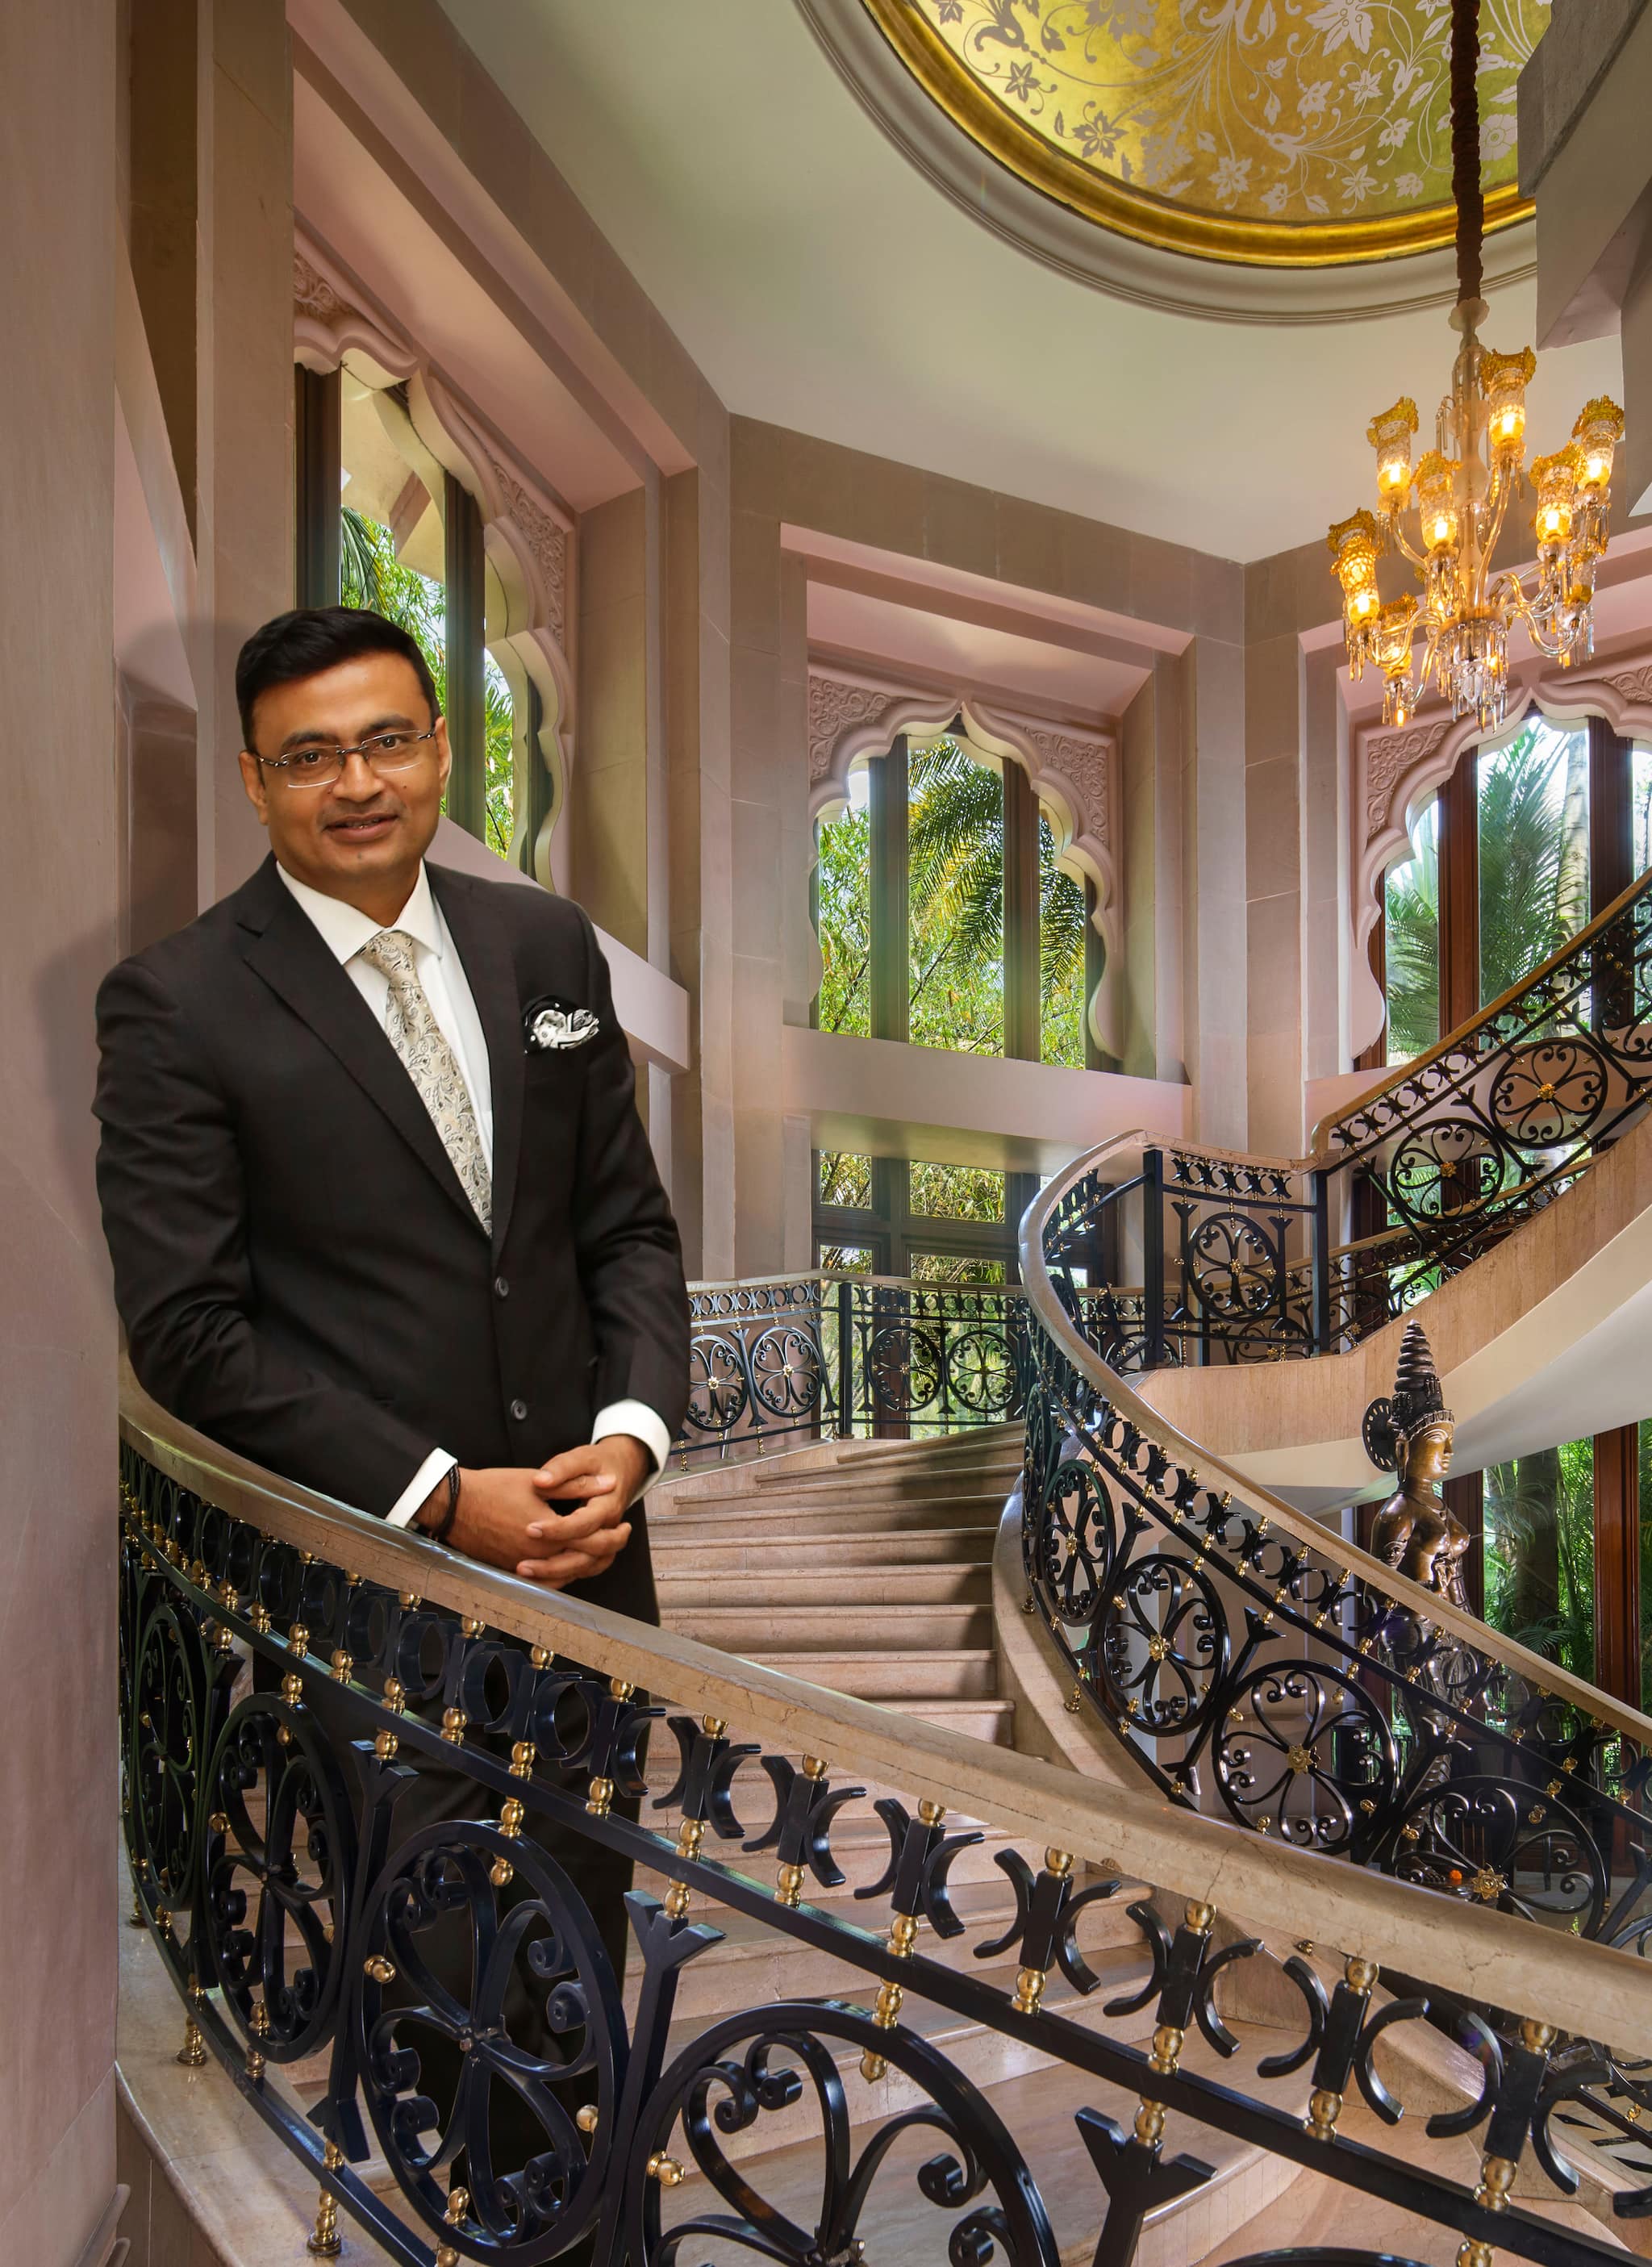 Anuraag Bhatnagar, Chief Operating Officer, The Leela Palaces, Hotels and Resorts